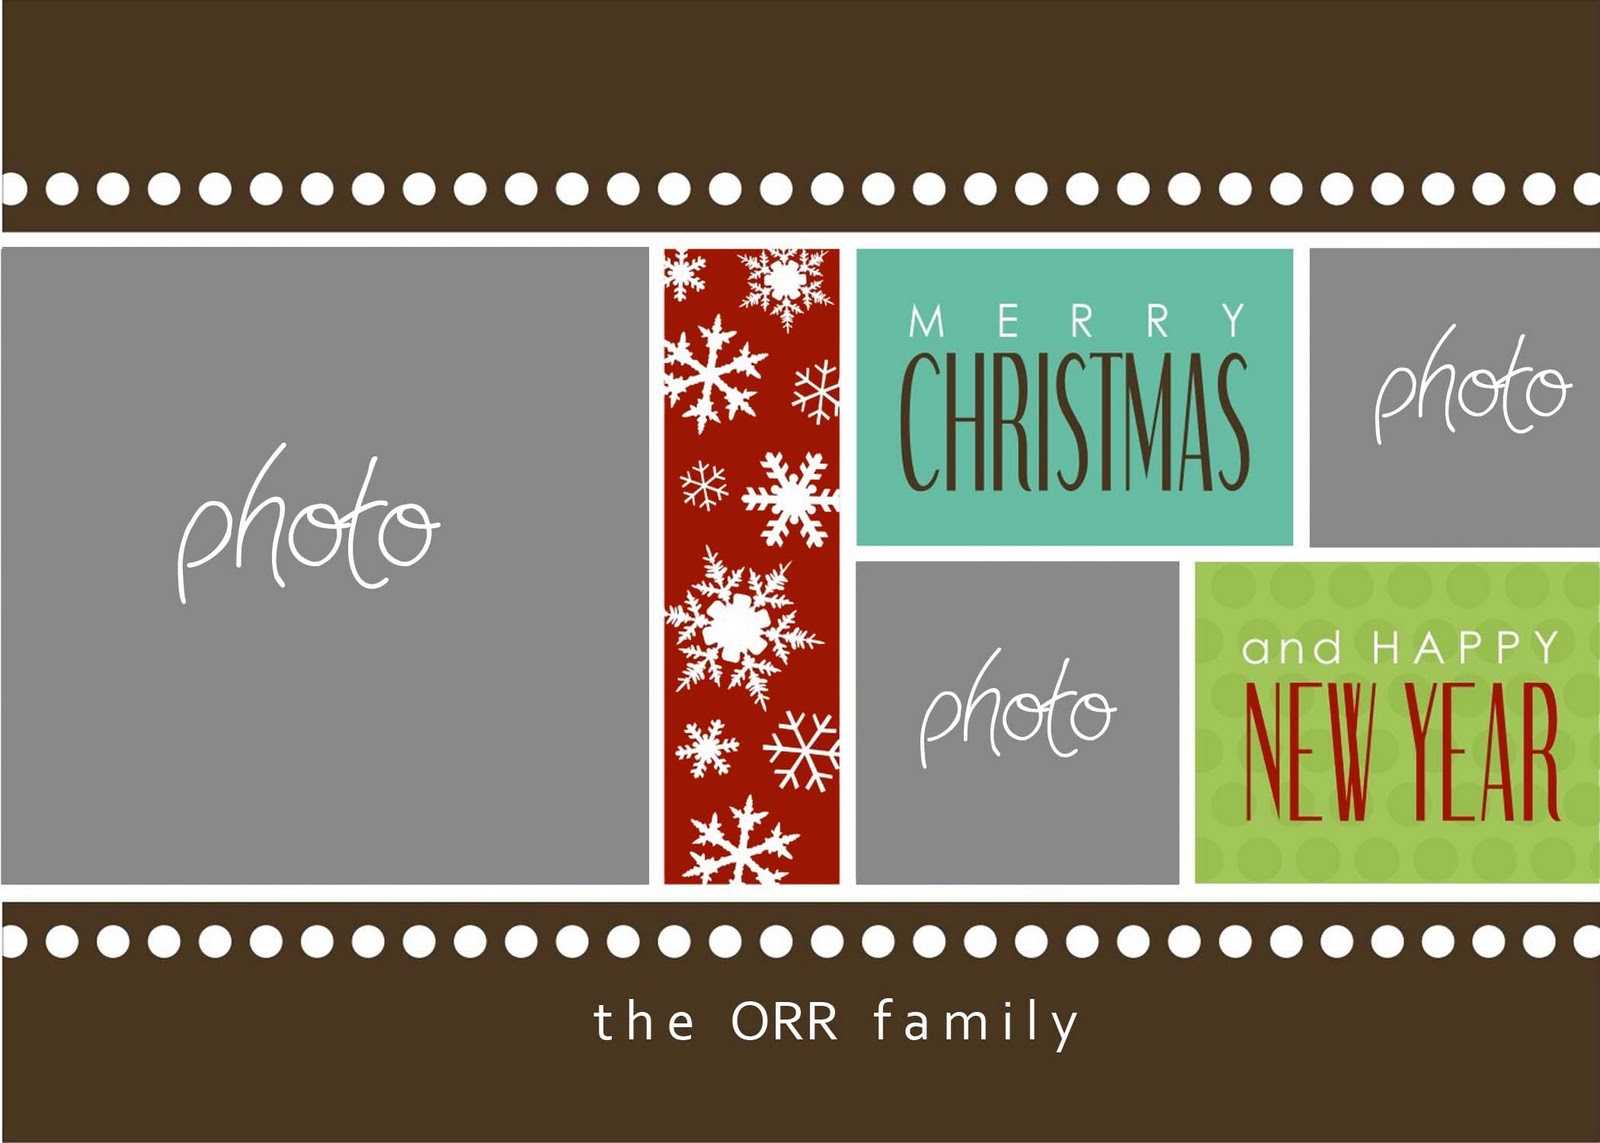 Christmas Cards Templates Photoshop ] - Christmas Card Within Christmas Photo Card Templates Photoshop